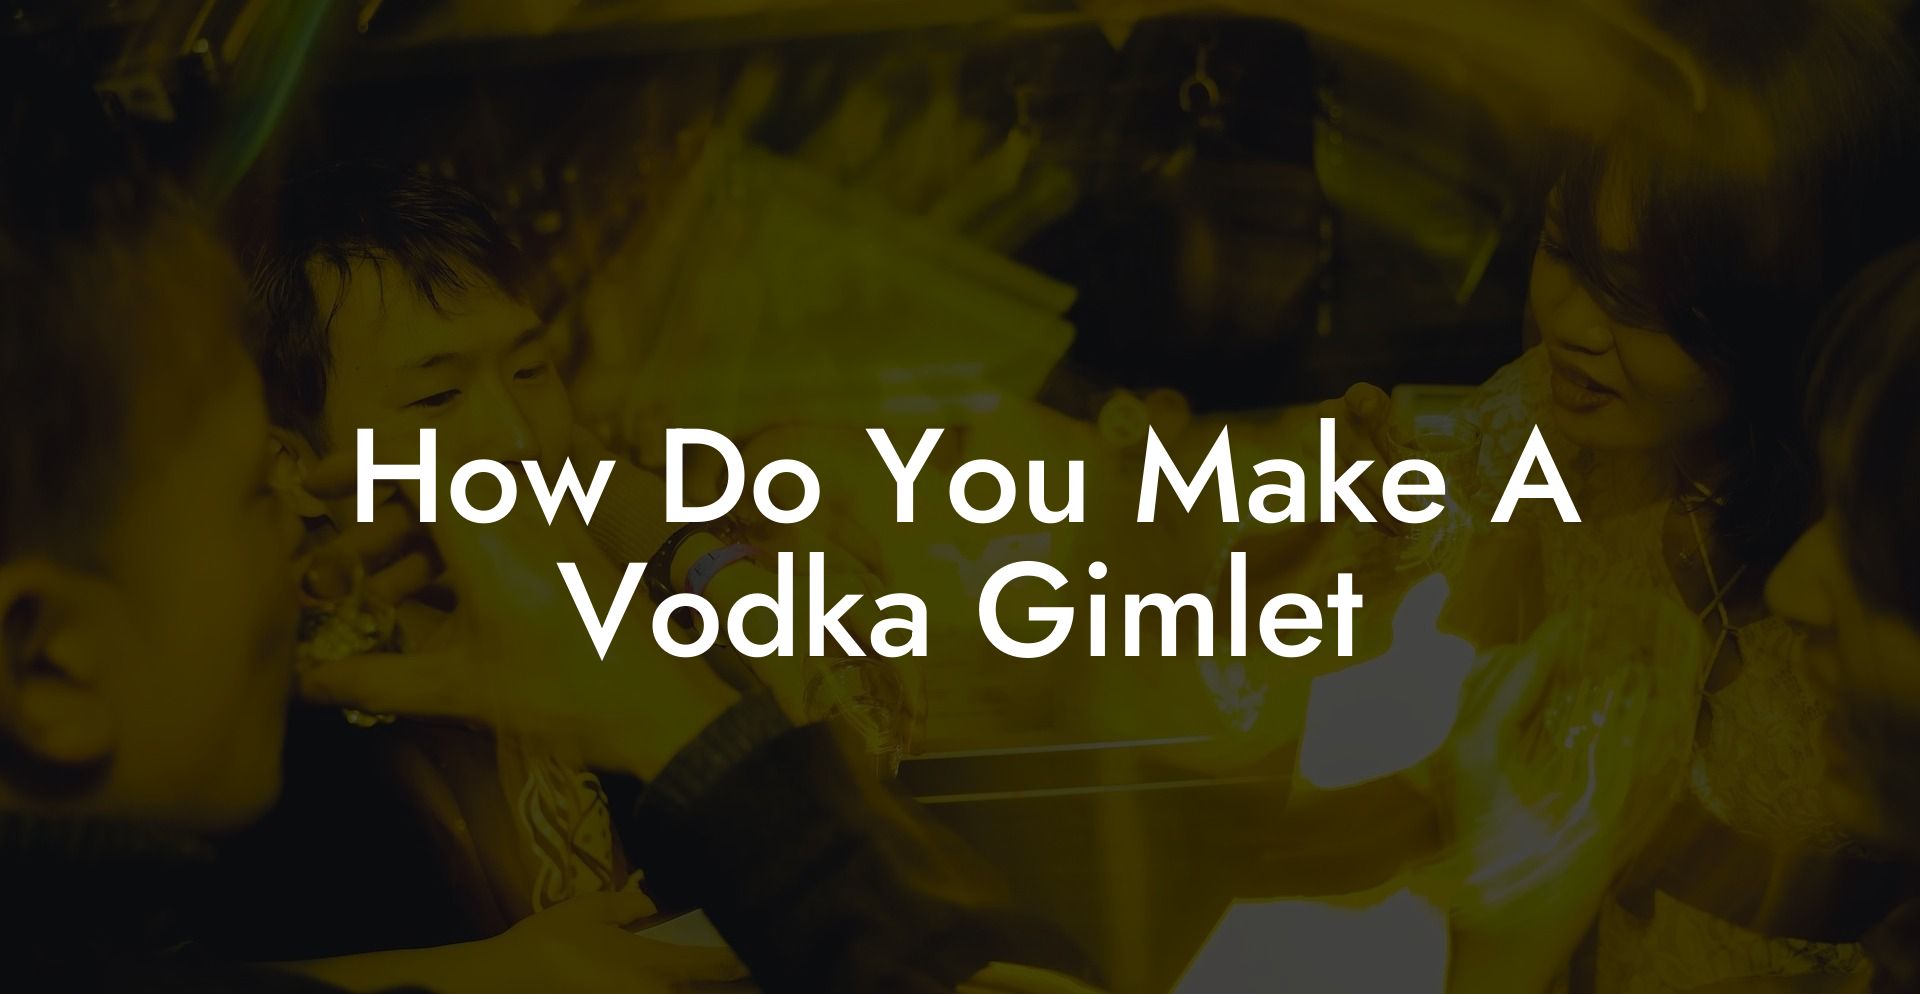 How Do You Make A Vodka Gimlet